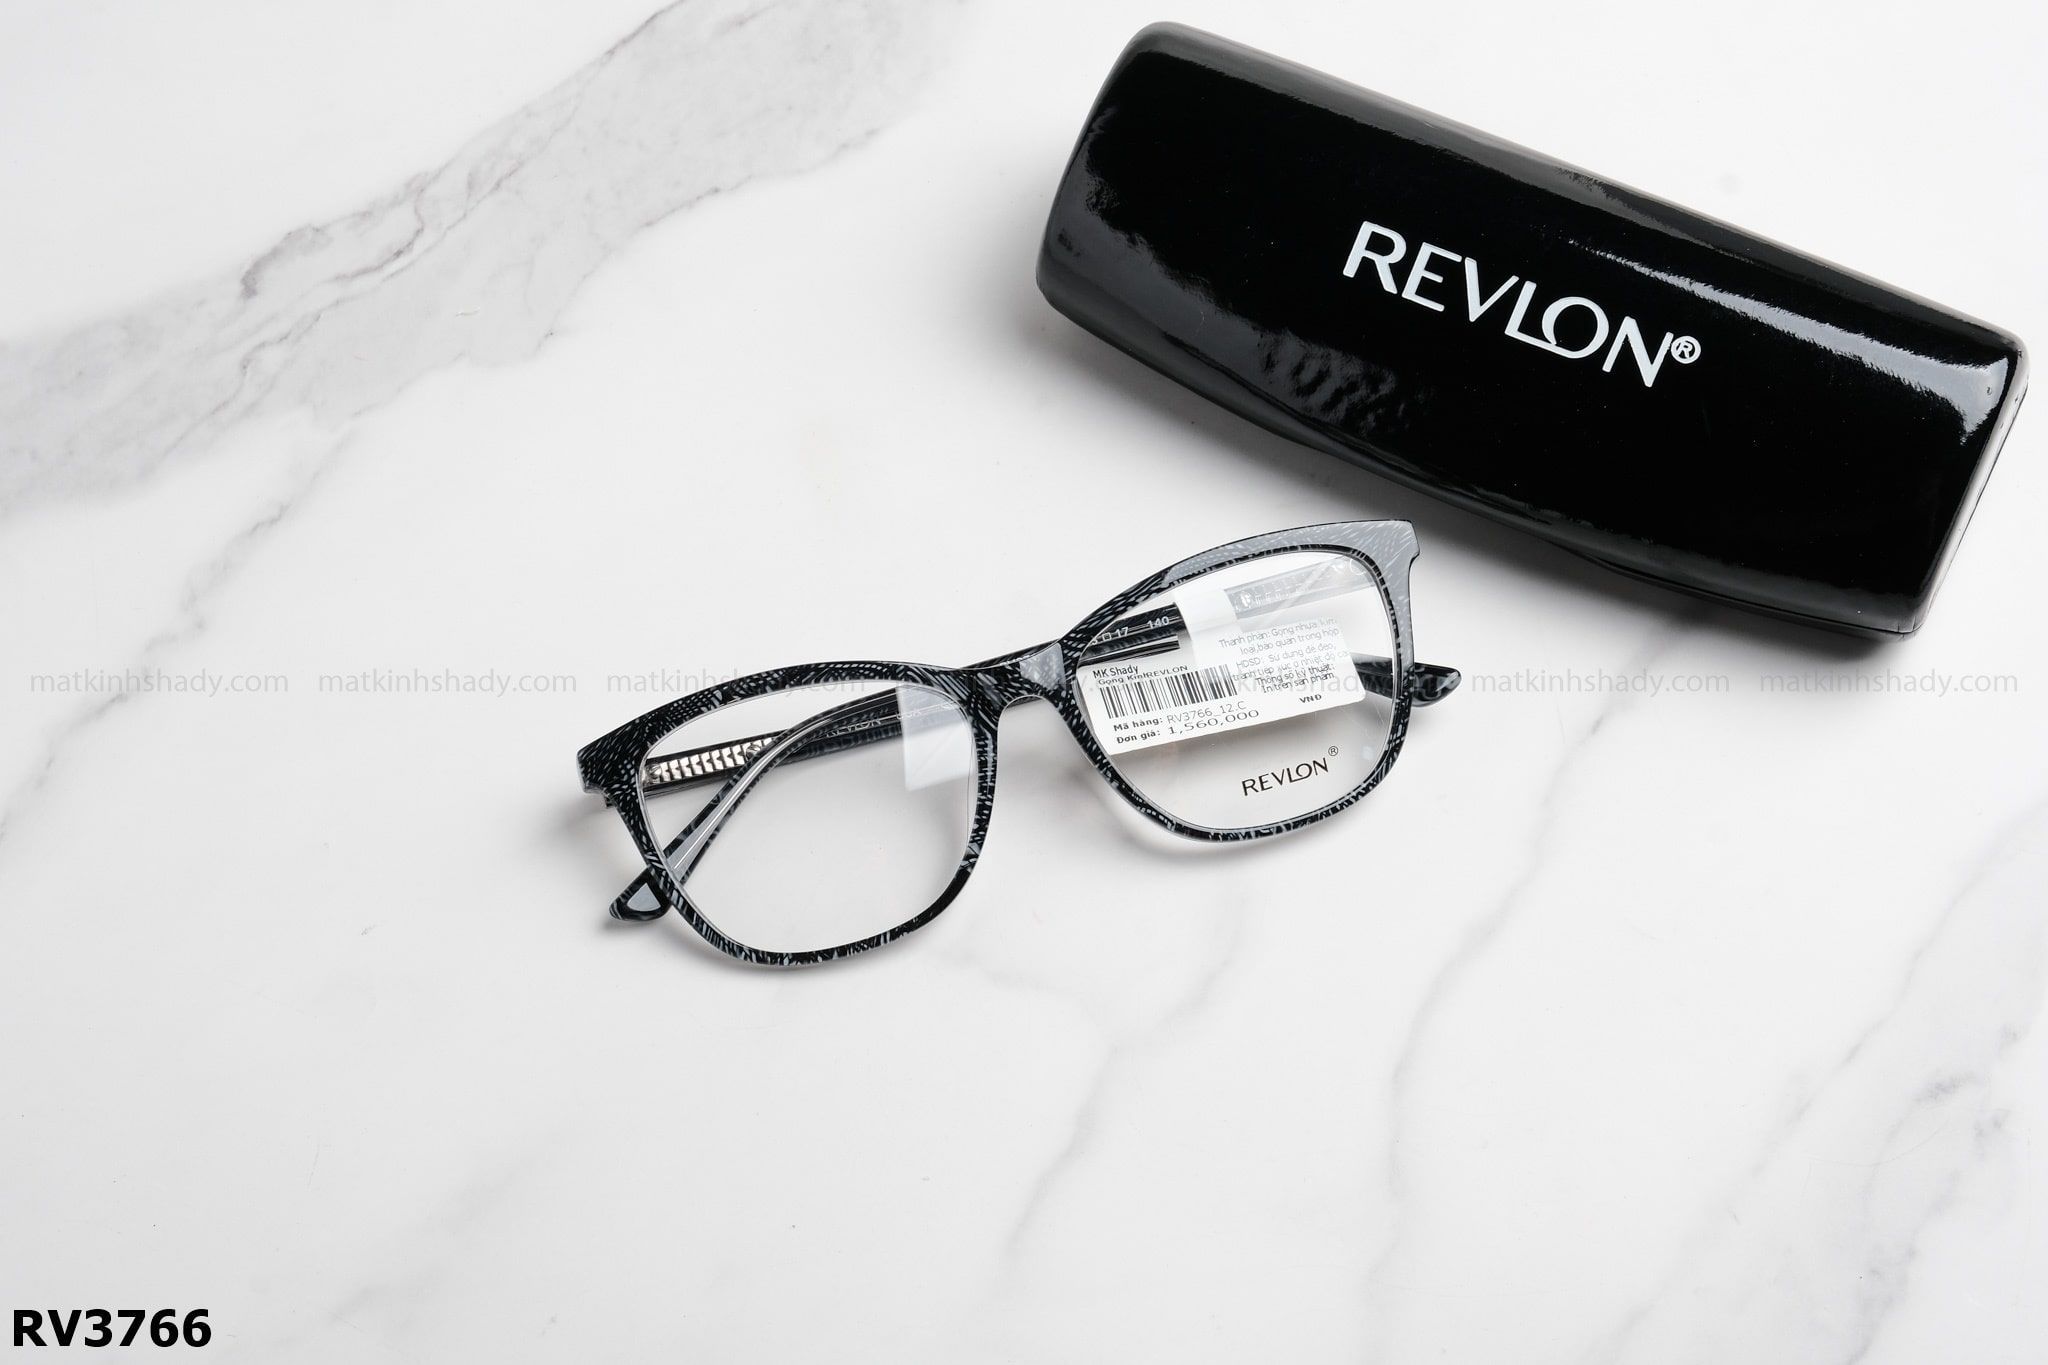  Revlon Eyewear - Glasses - RV3766 